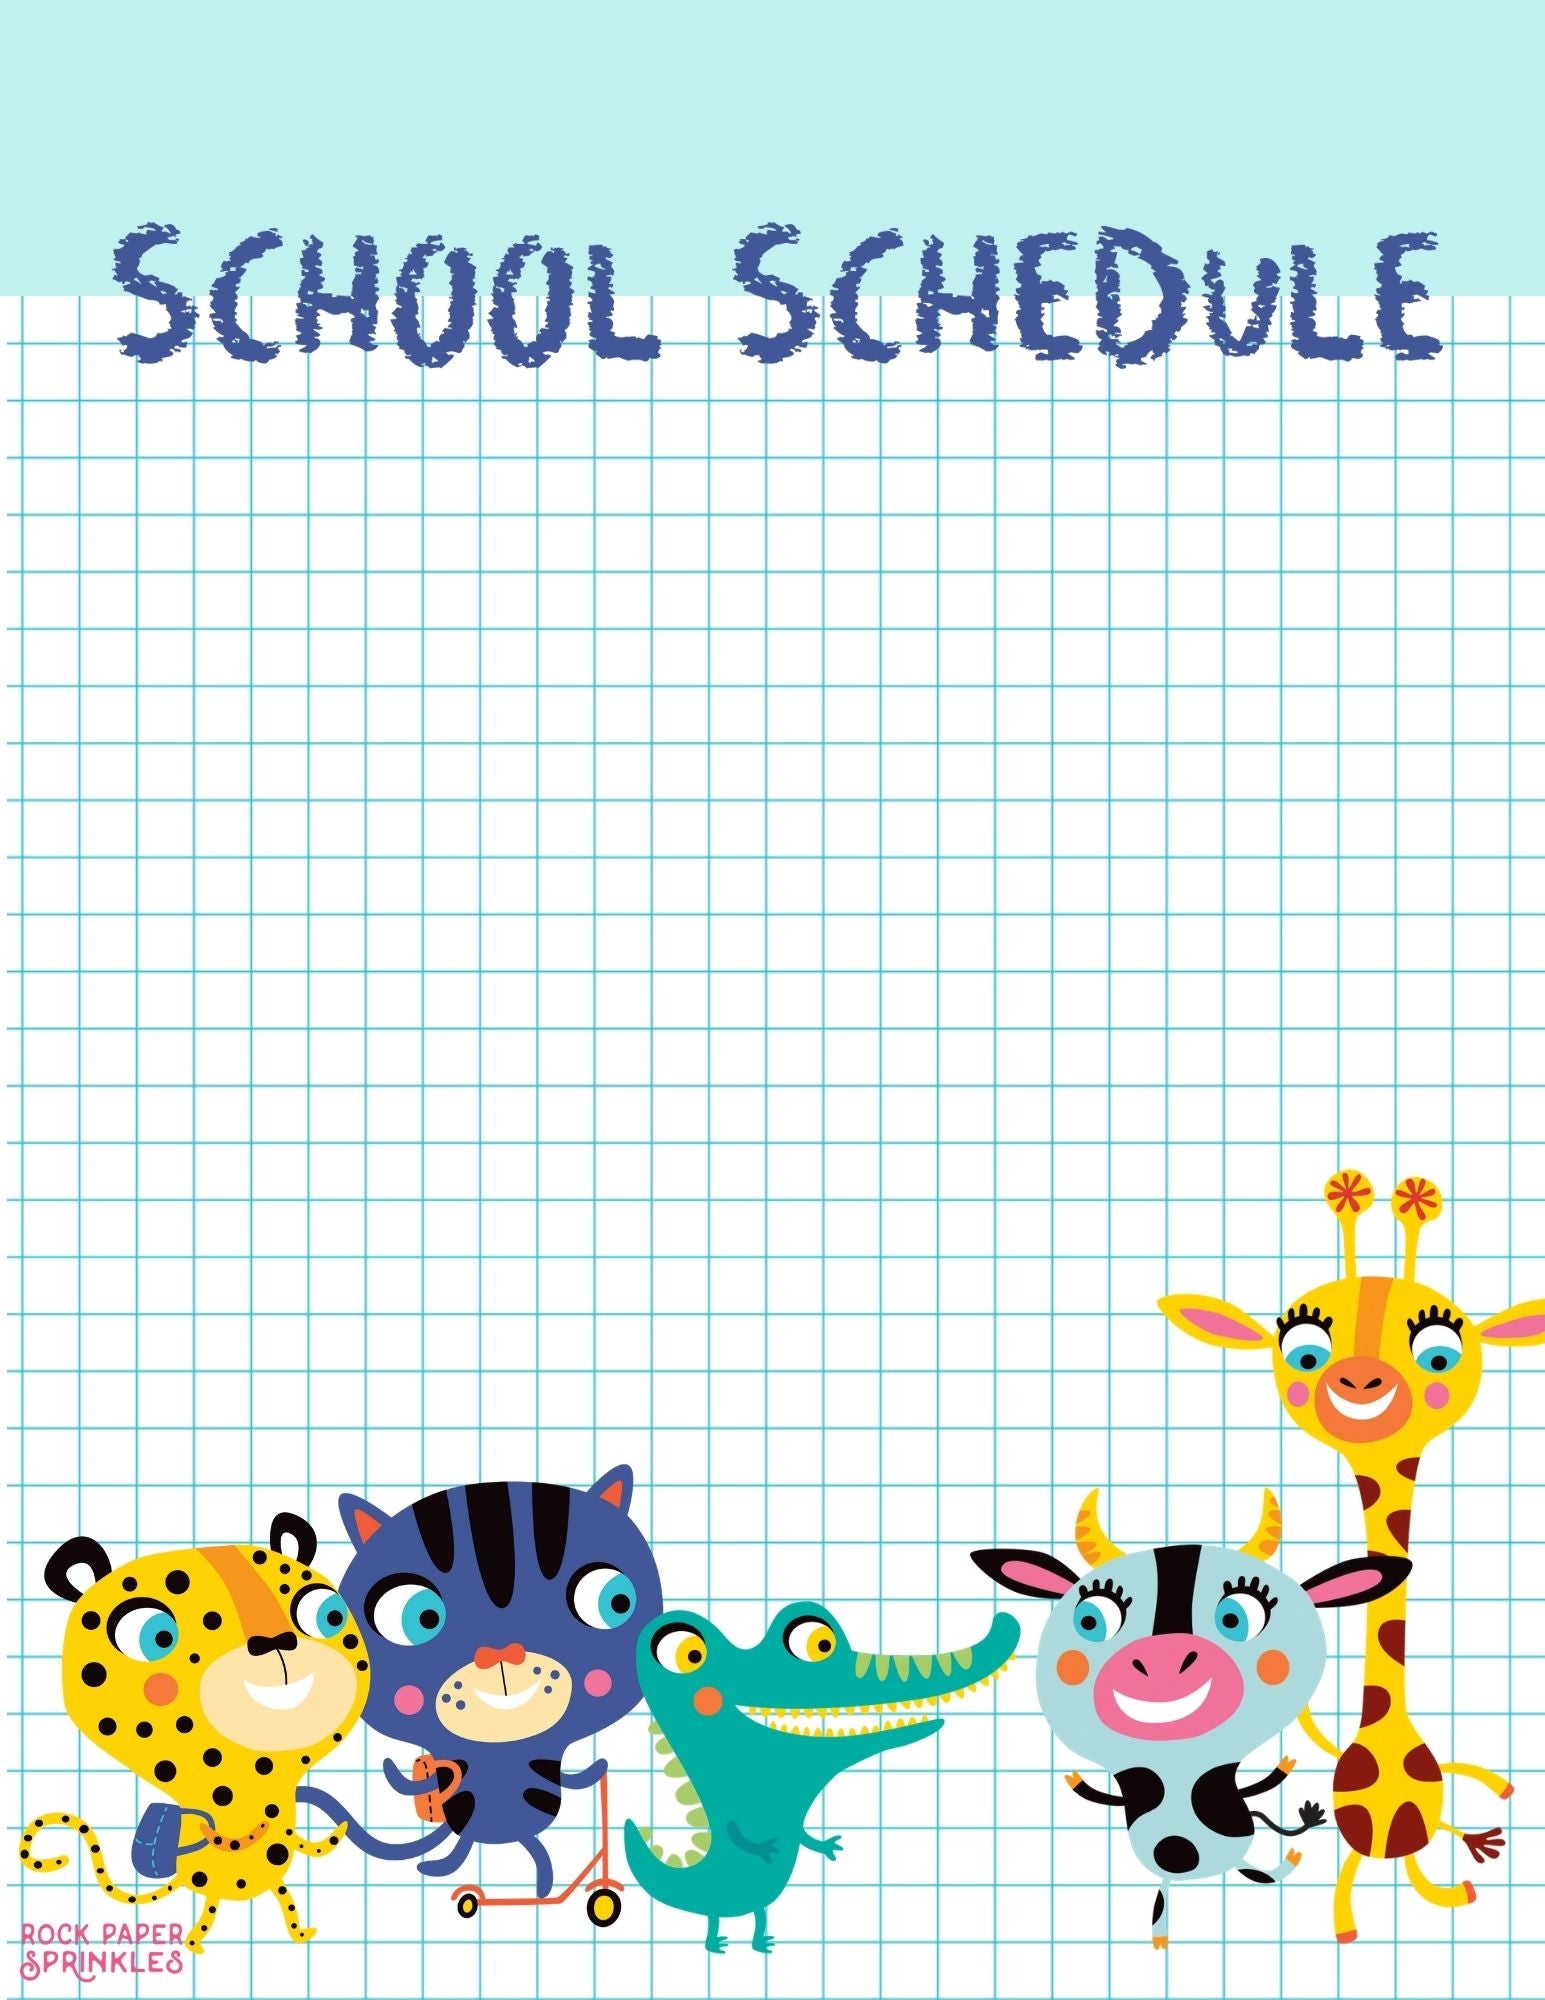 Editable School Schedule for Kids, School Supplies Theme